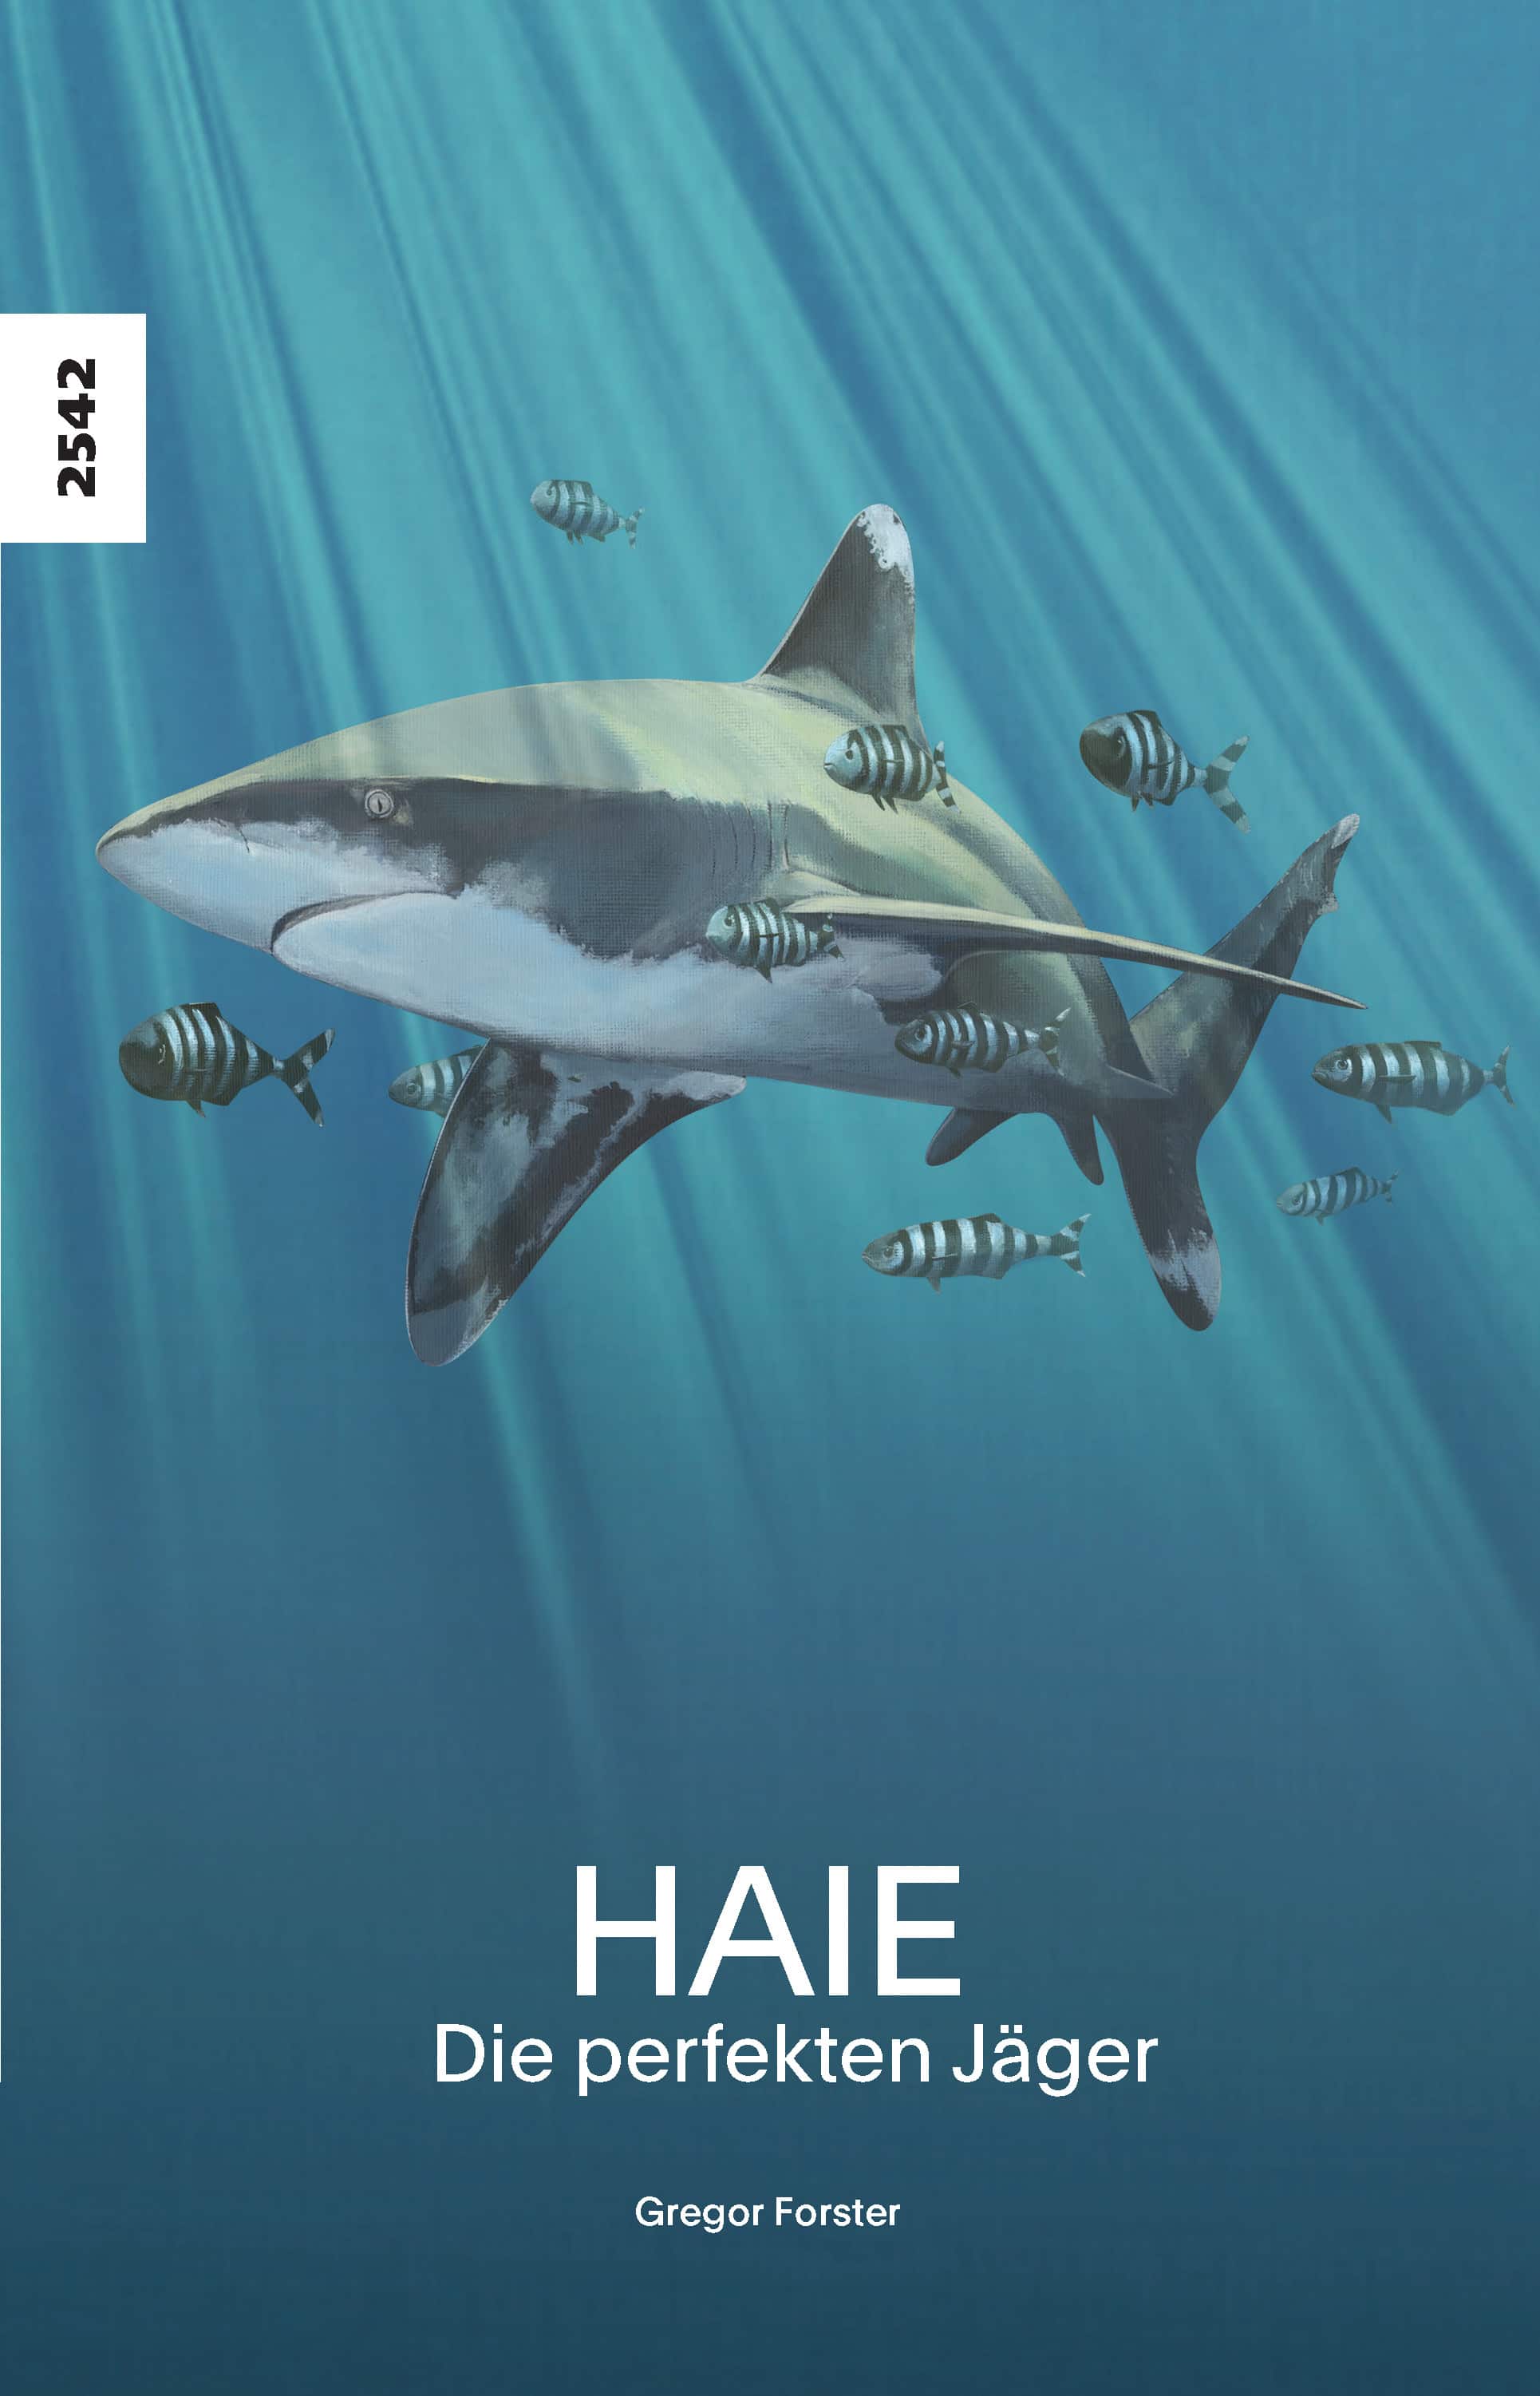 Haie – Die perfekten Jäger